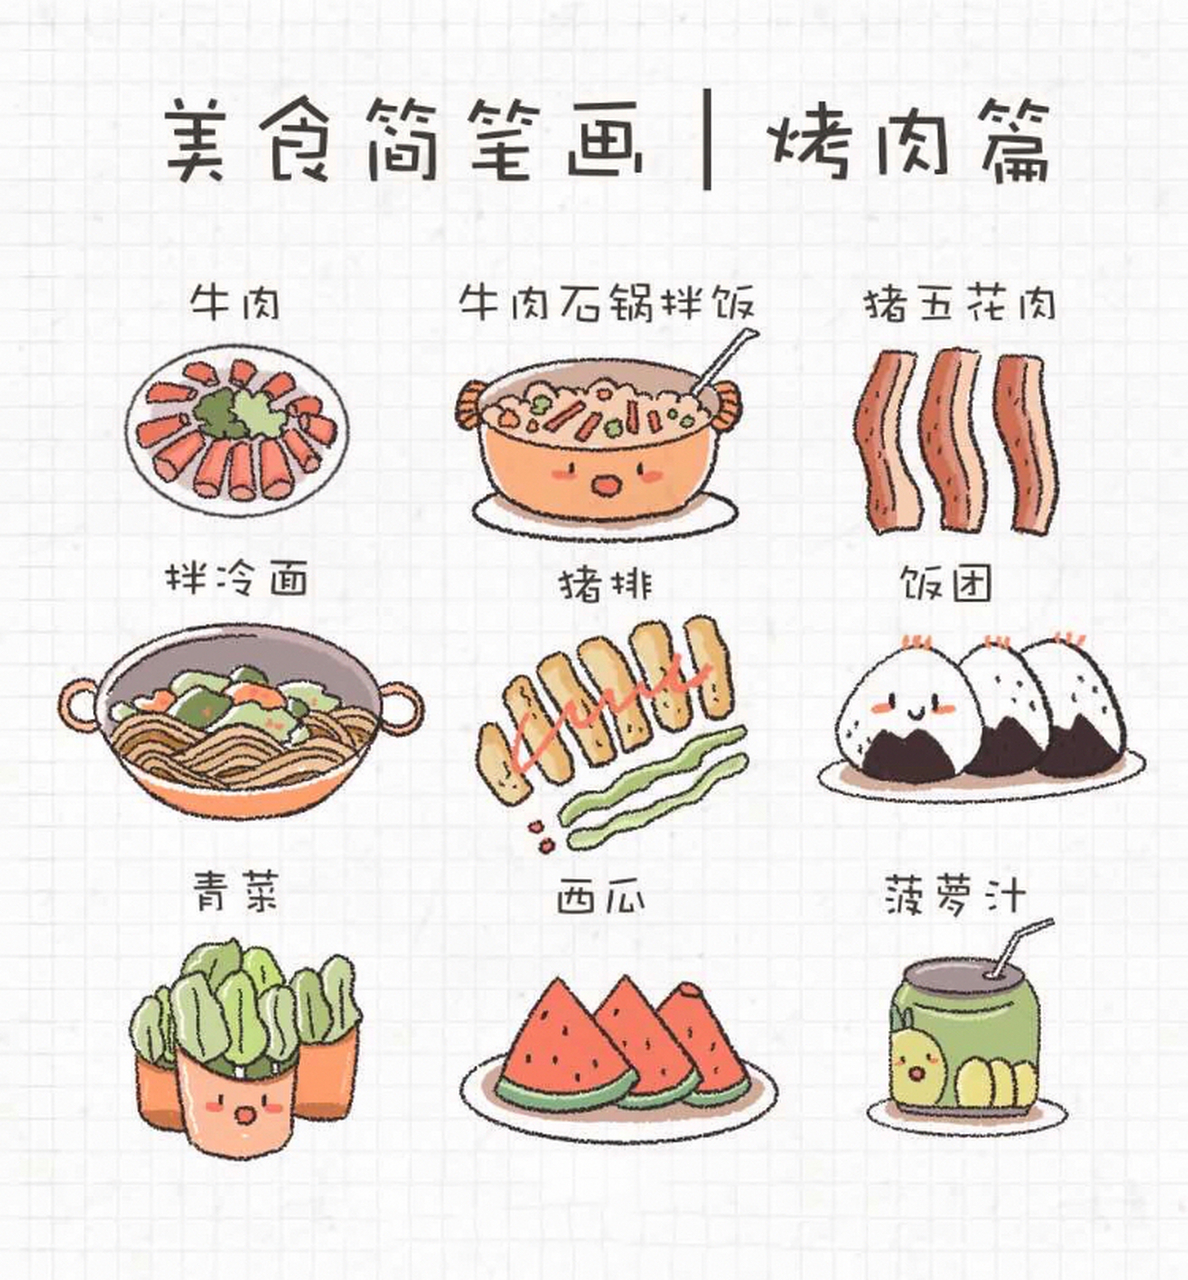 韩国特色美食简笔画图片